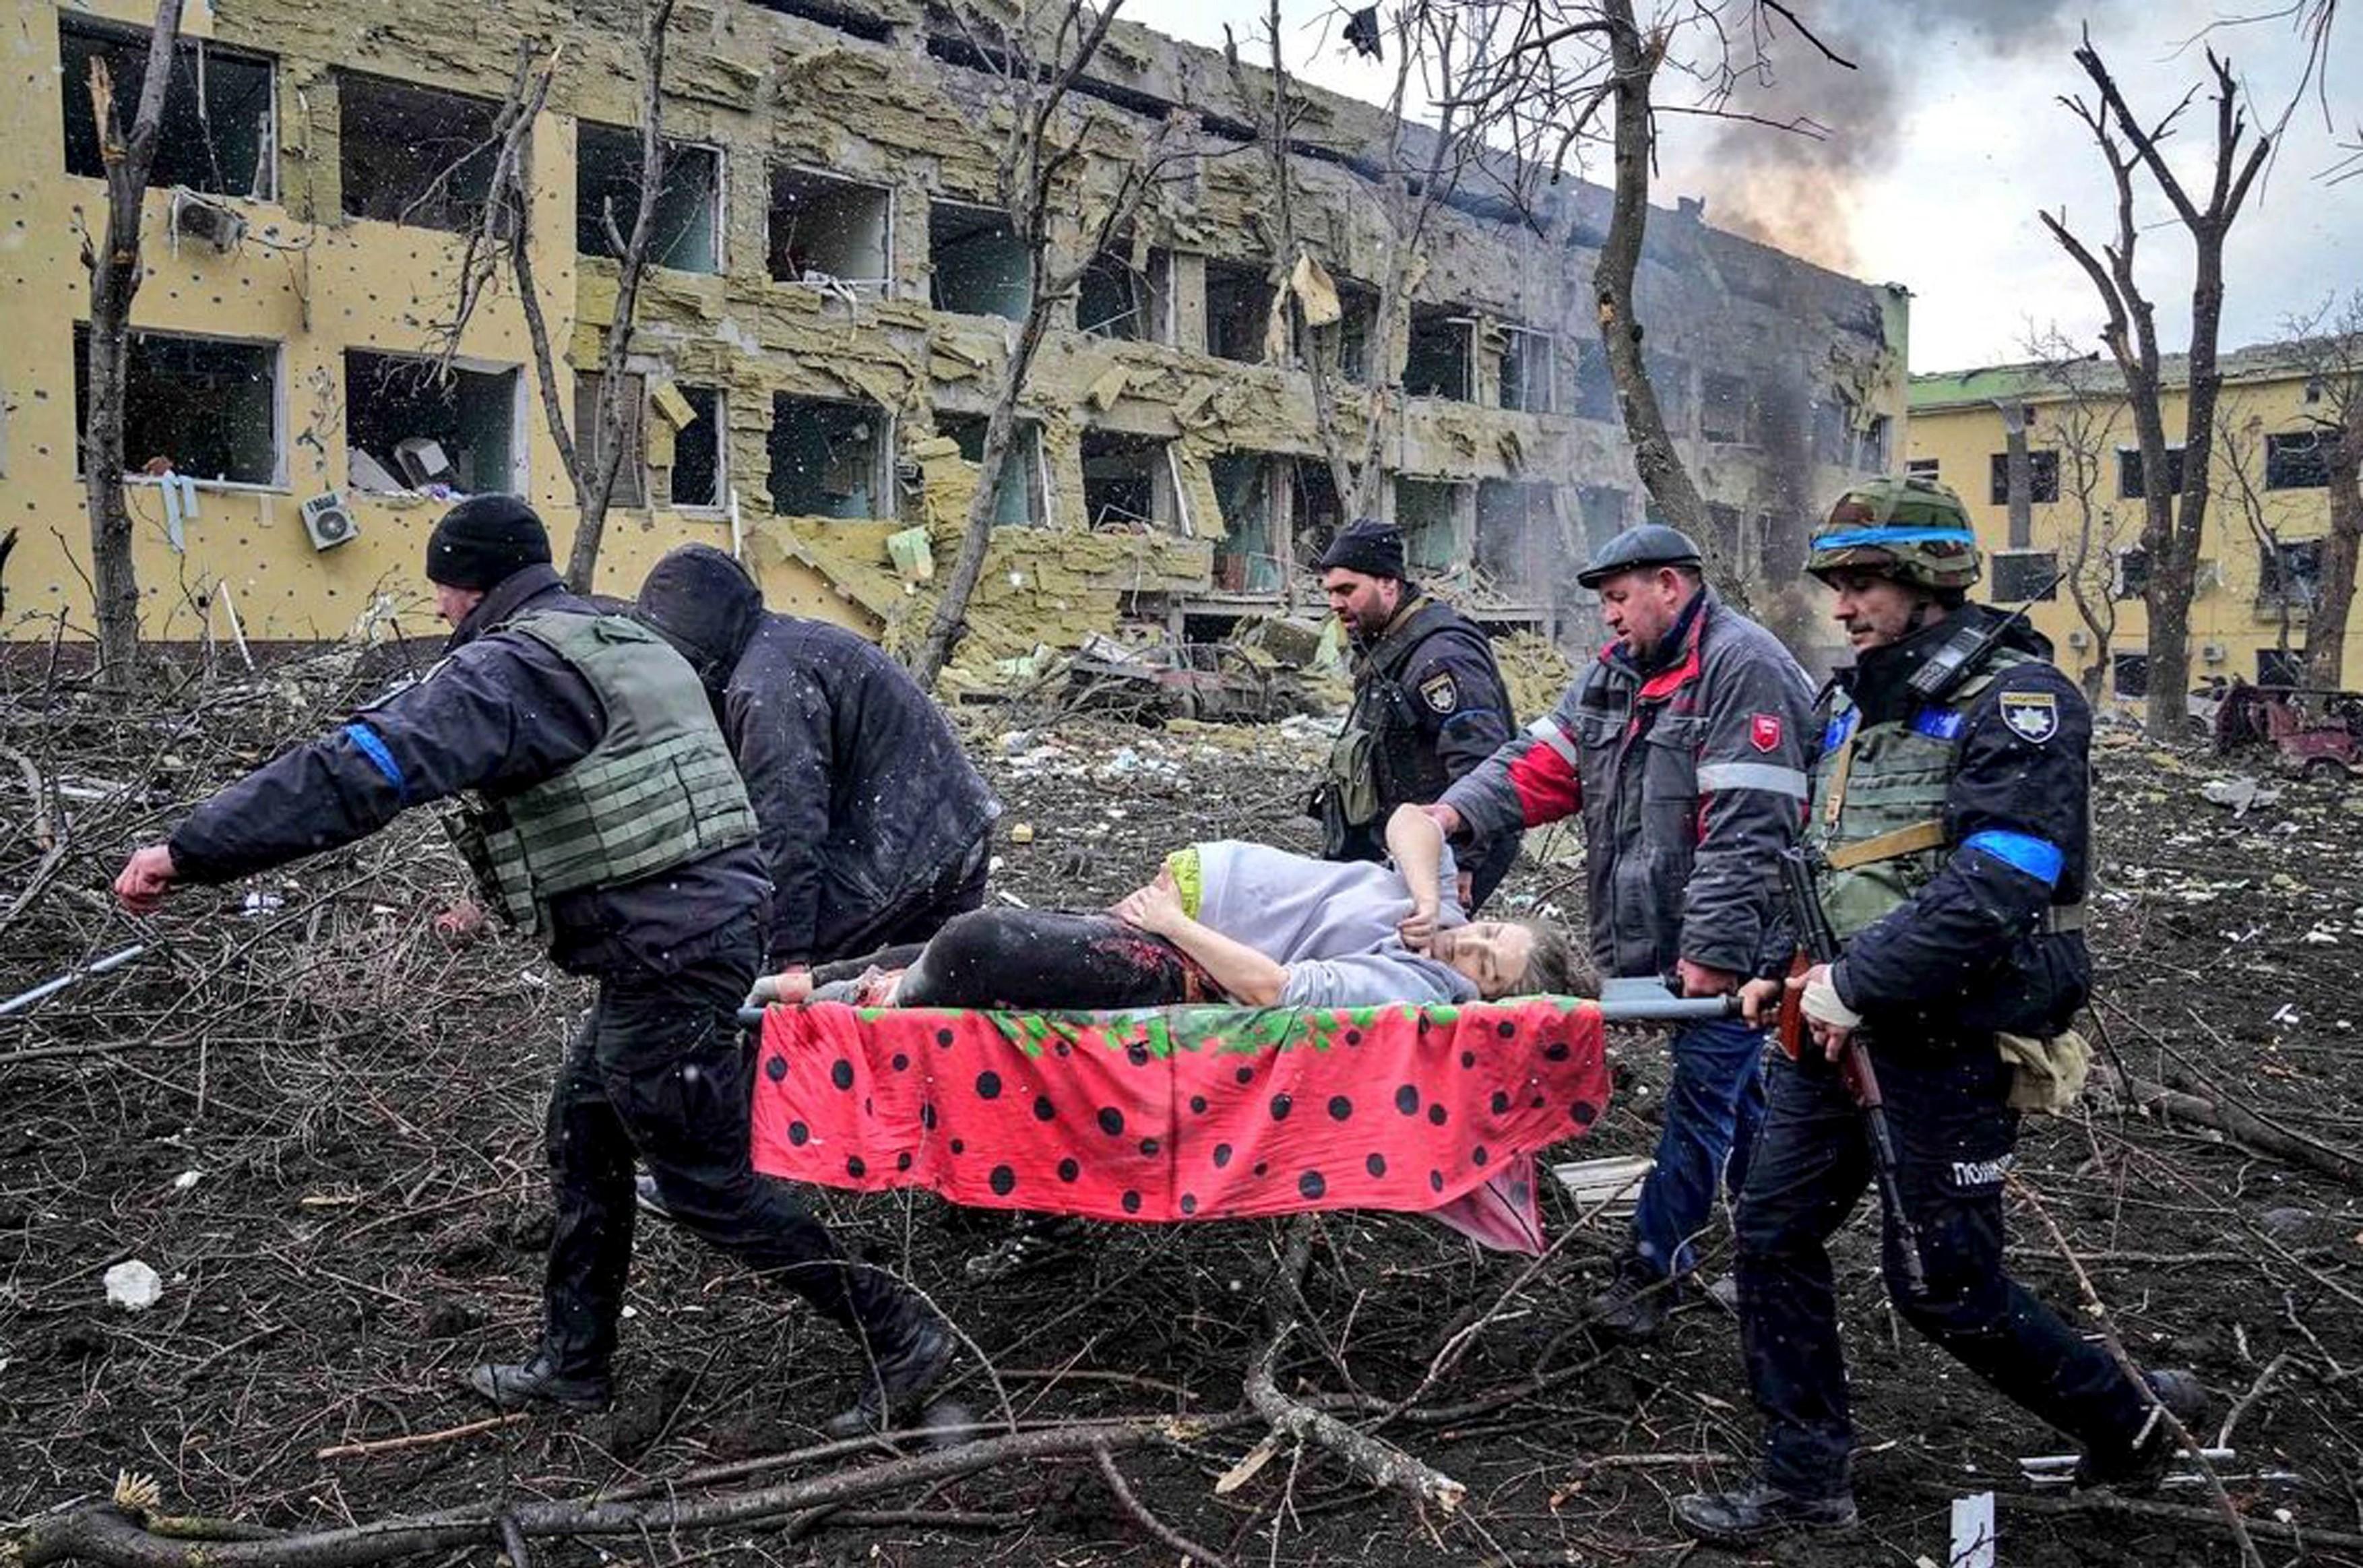 Peste 1200 de cadavre ridicate de pe străzi în Mariupol. ”Oamenii se atacă pentru mâncare”. Scene de groază în orașul asediat de ruși